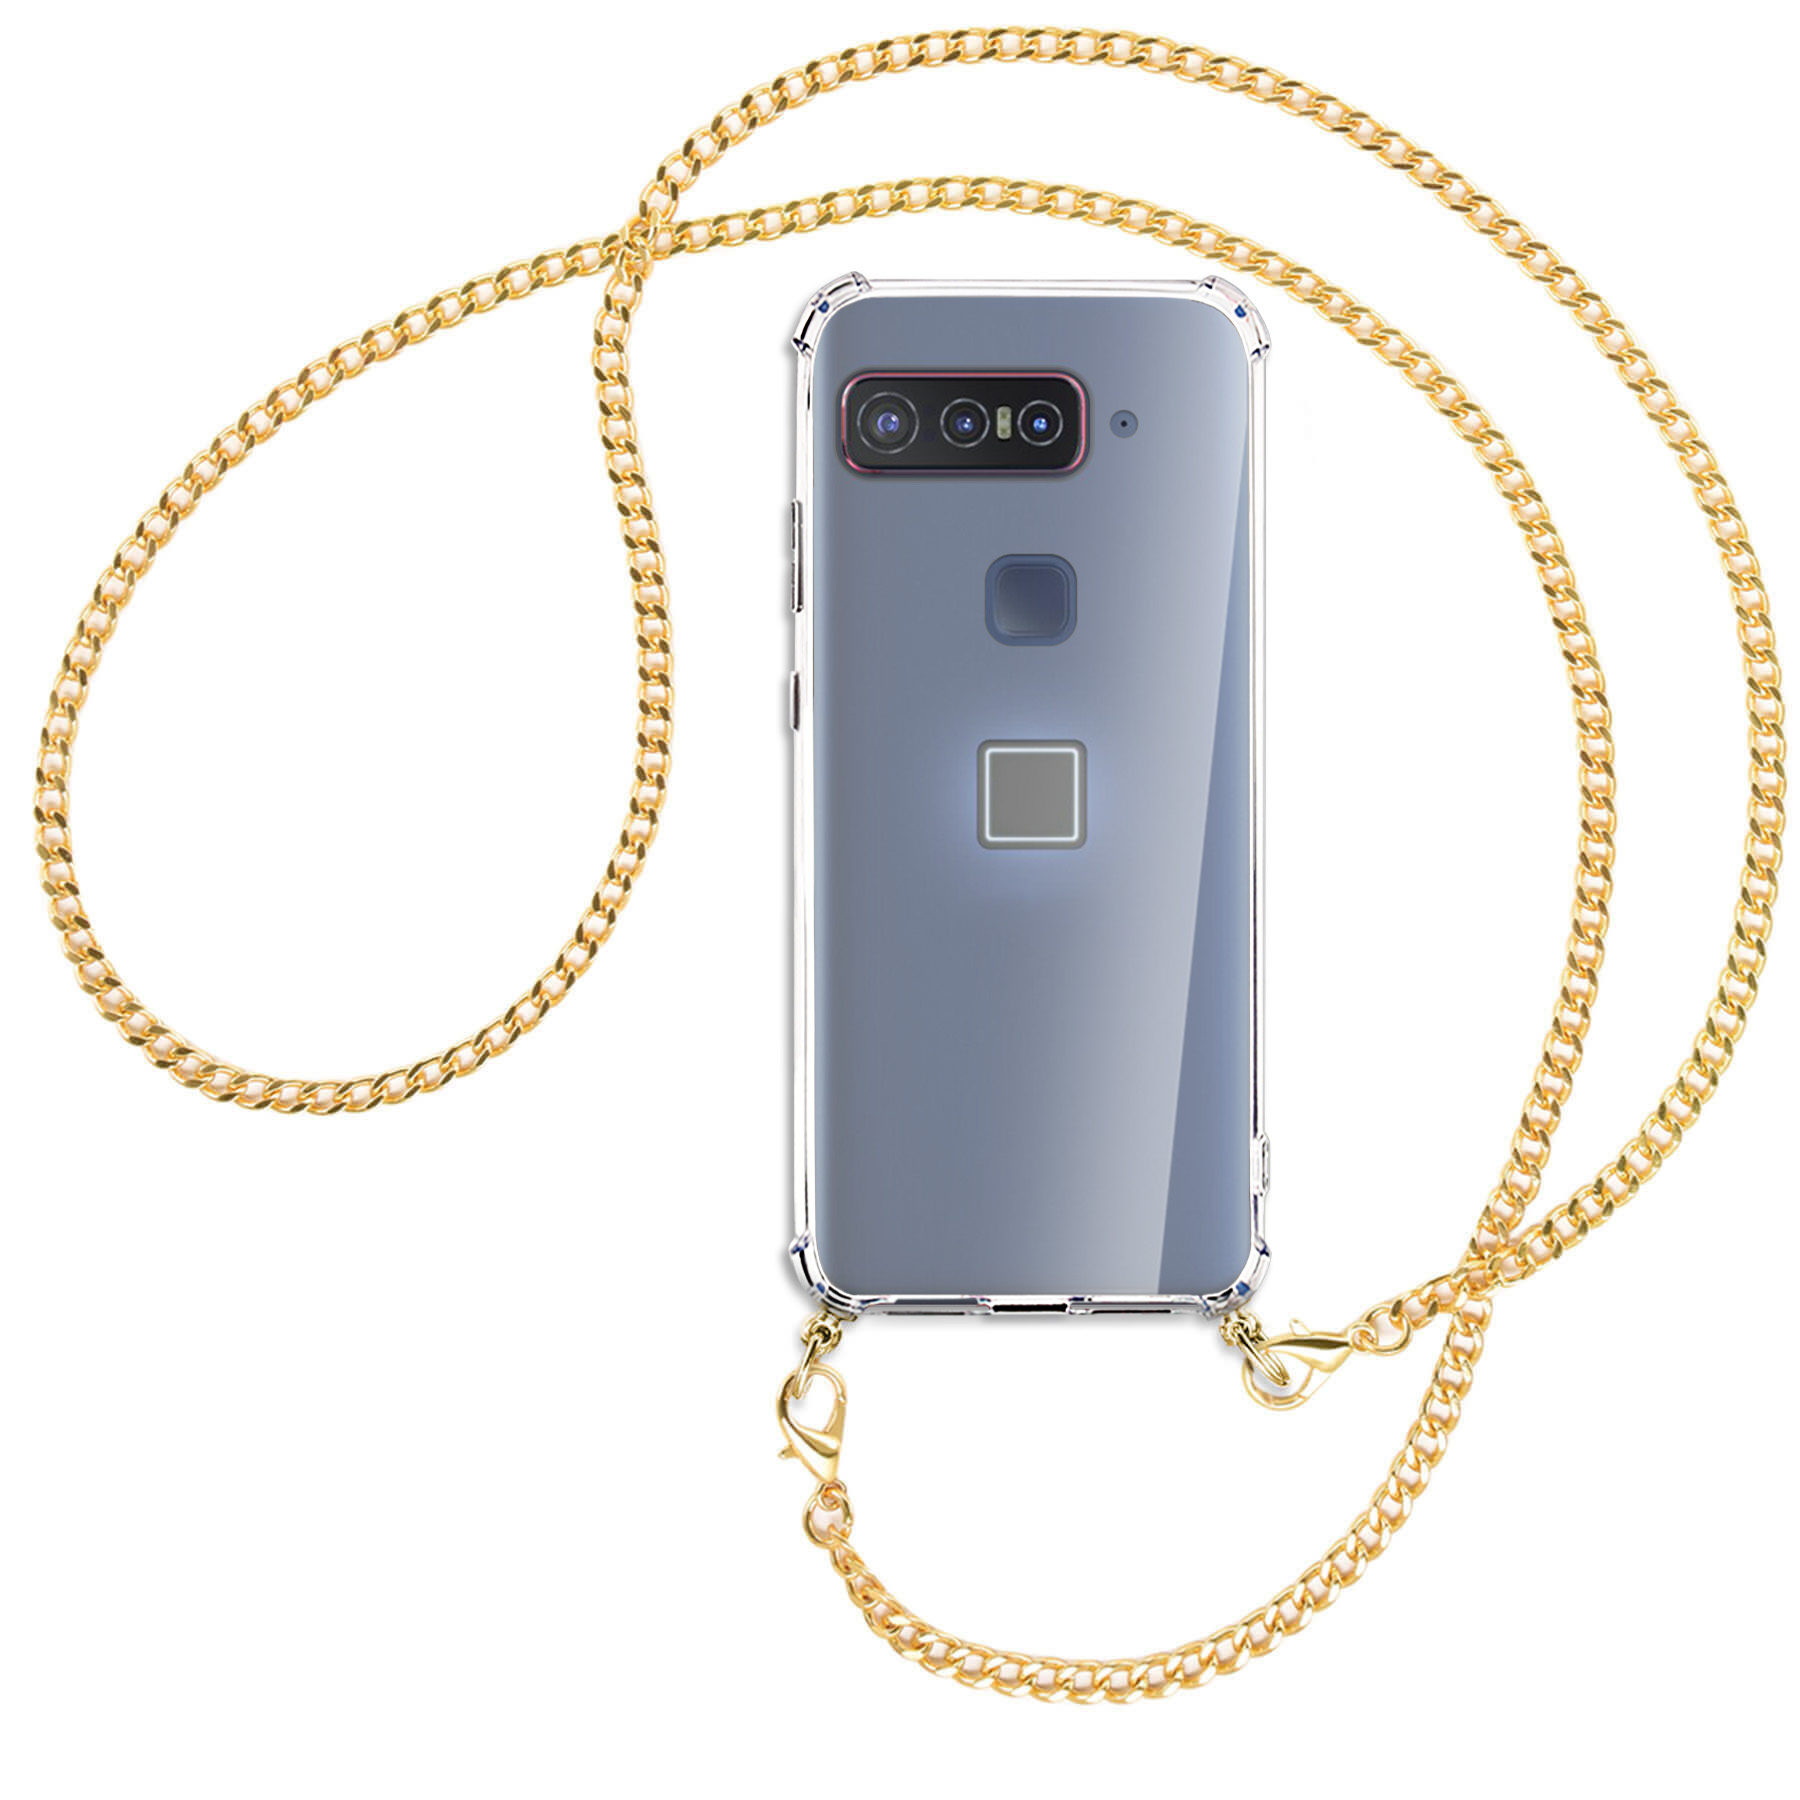 MTB MORE ENERGY Umhänge-Hülle mit for Asus, Metallkette, Backcover, Kette (goldfarben) Smartphone Snapdragon Qualcomm Insiders